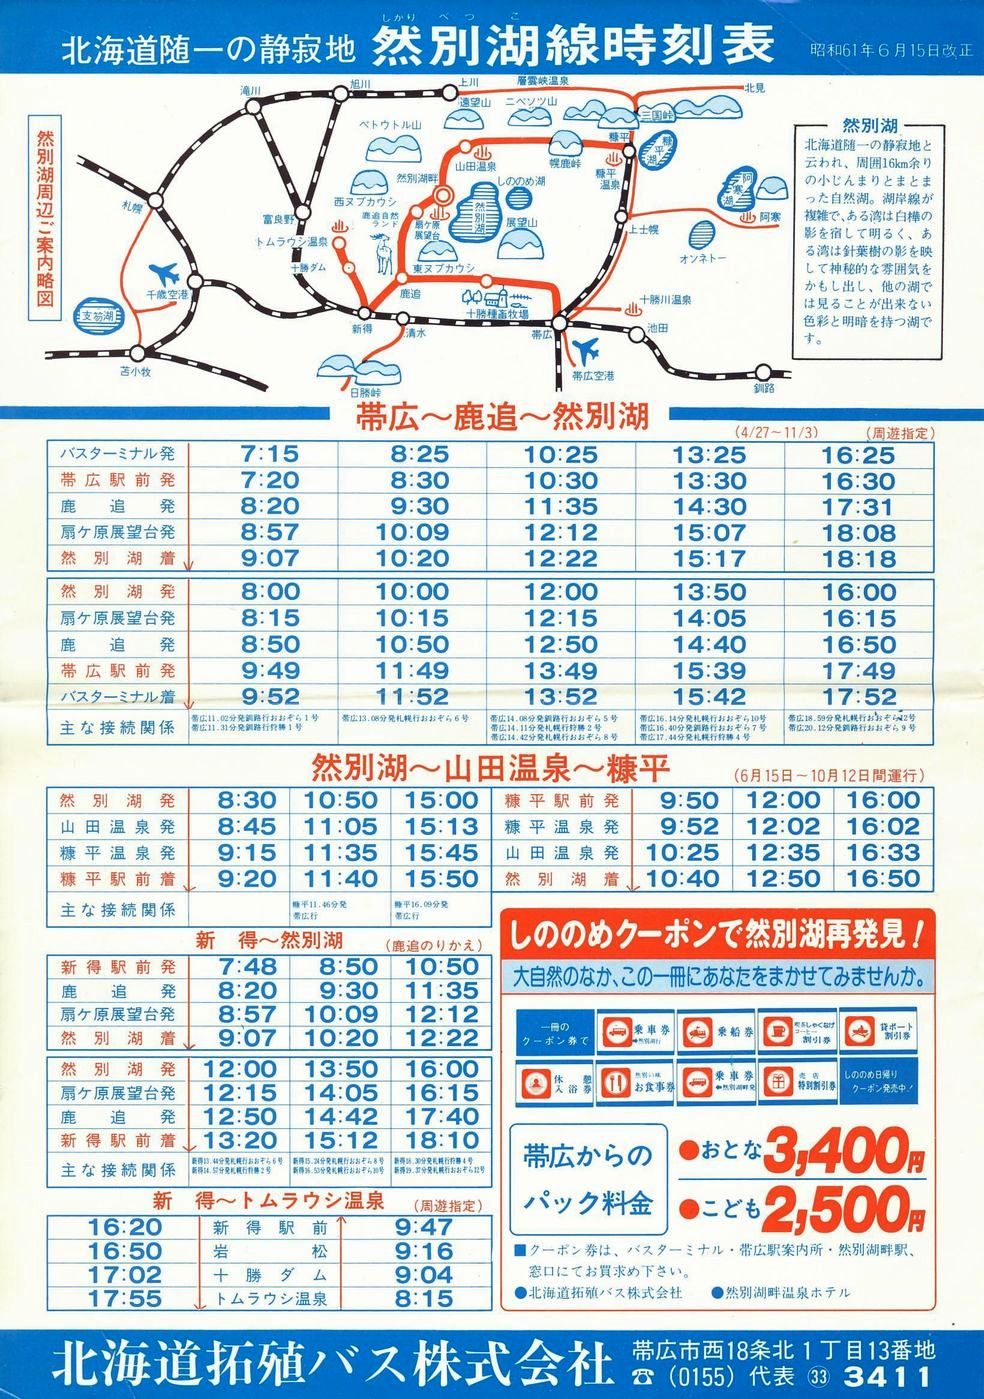 1986-06-15改正_北海道拓殖バス_然別湖線時刻表